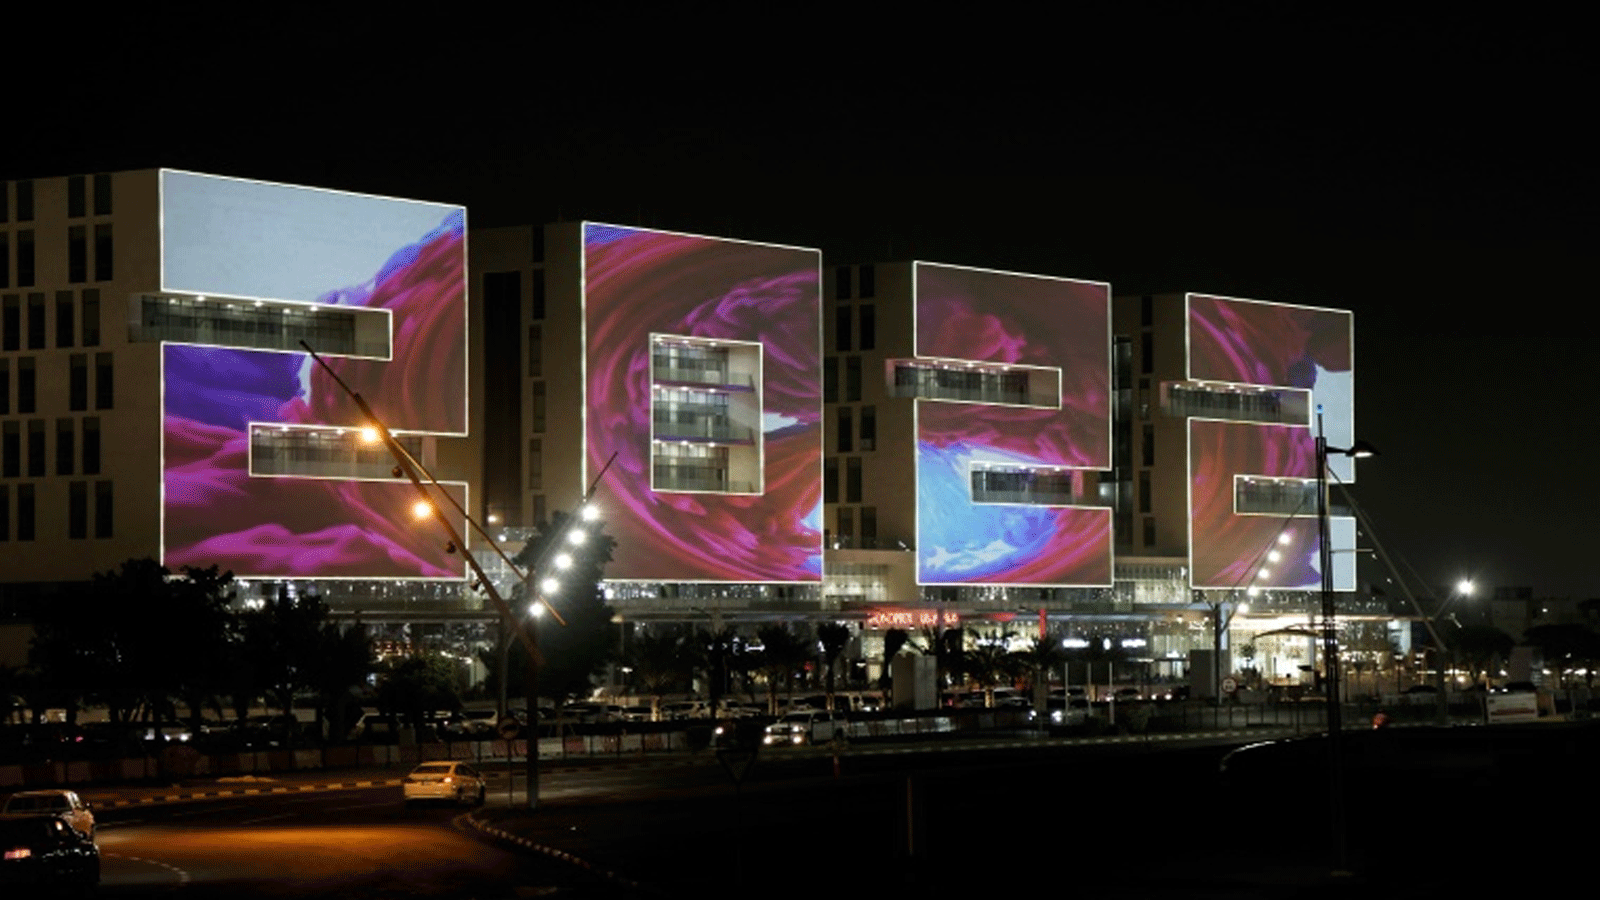 مجمّع أبنية في العاصمة القطرية الدوحة صُمّم على شكل أرقام العام 2022 الذي سيشهد المونديال الأول في العالم العربي والشرق الأوسط